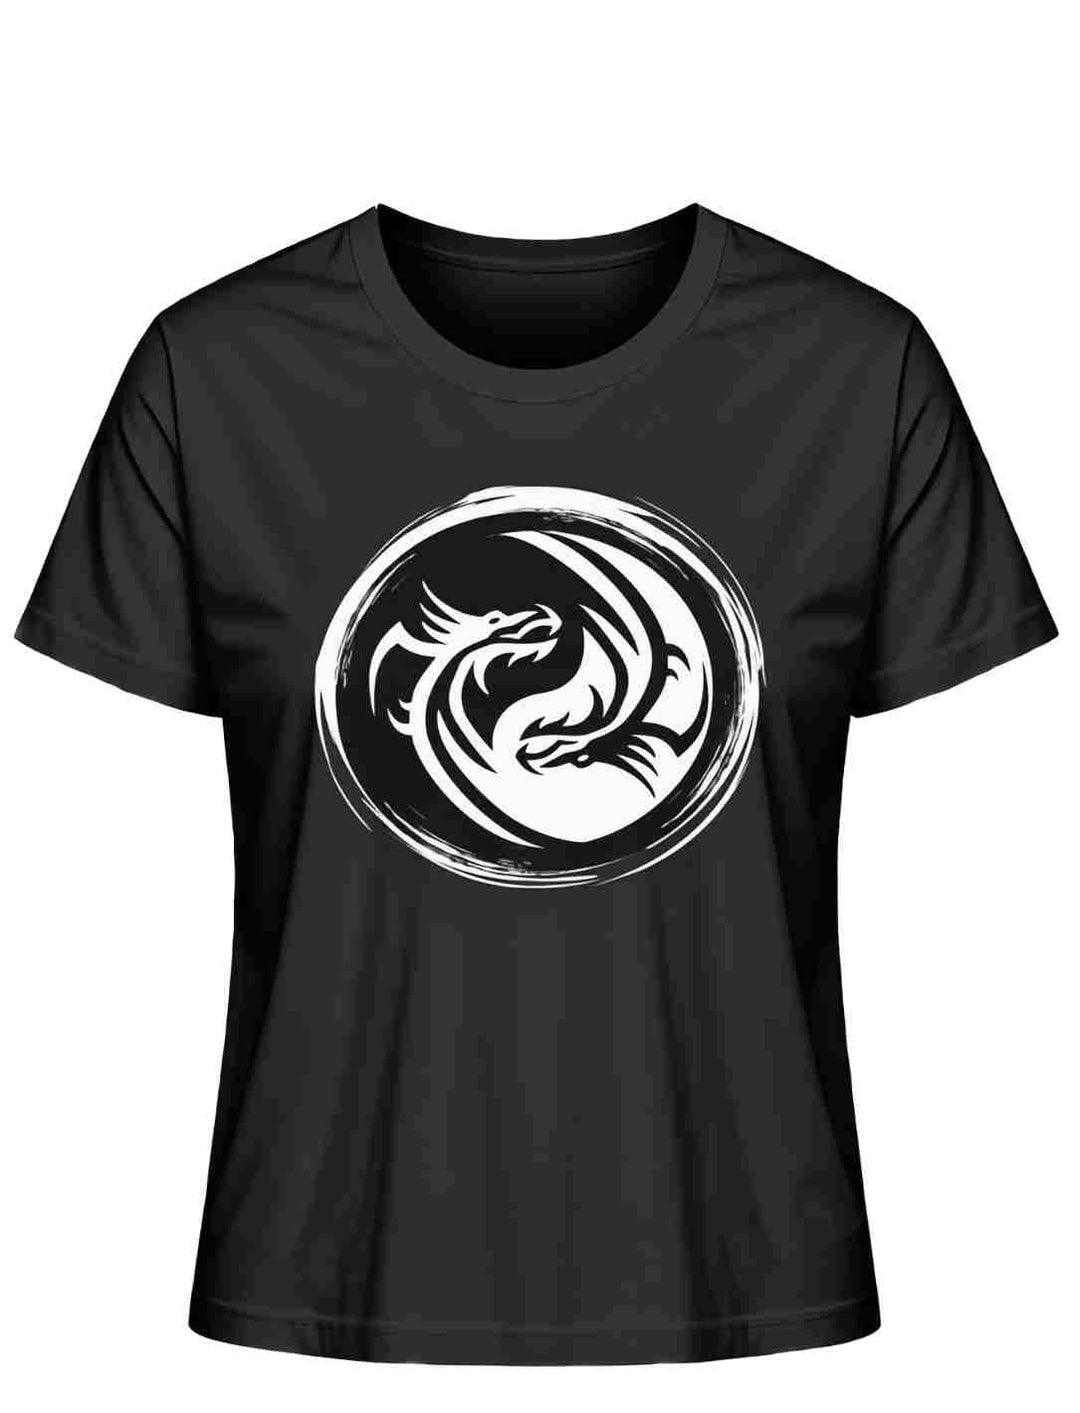 Schwarzes 'Drachensiegel des Gleichgewichts' T-Shirt mit Yin-Yang-Drachenmotiv auf weißem Grund.